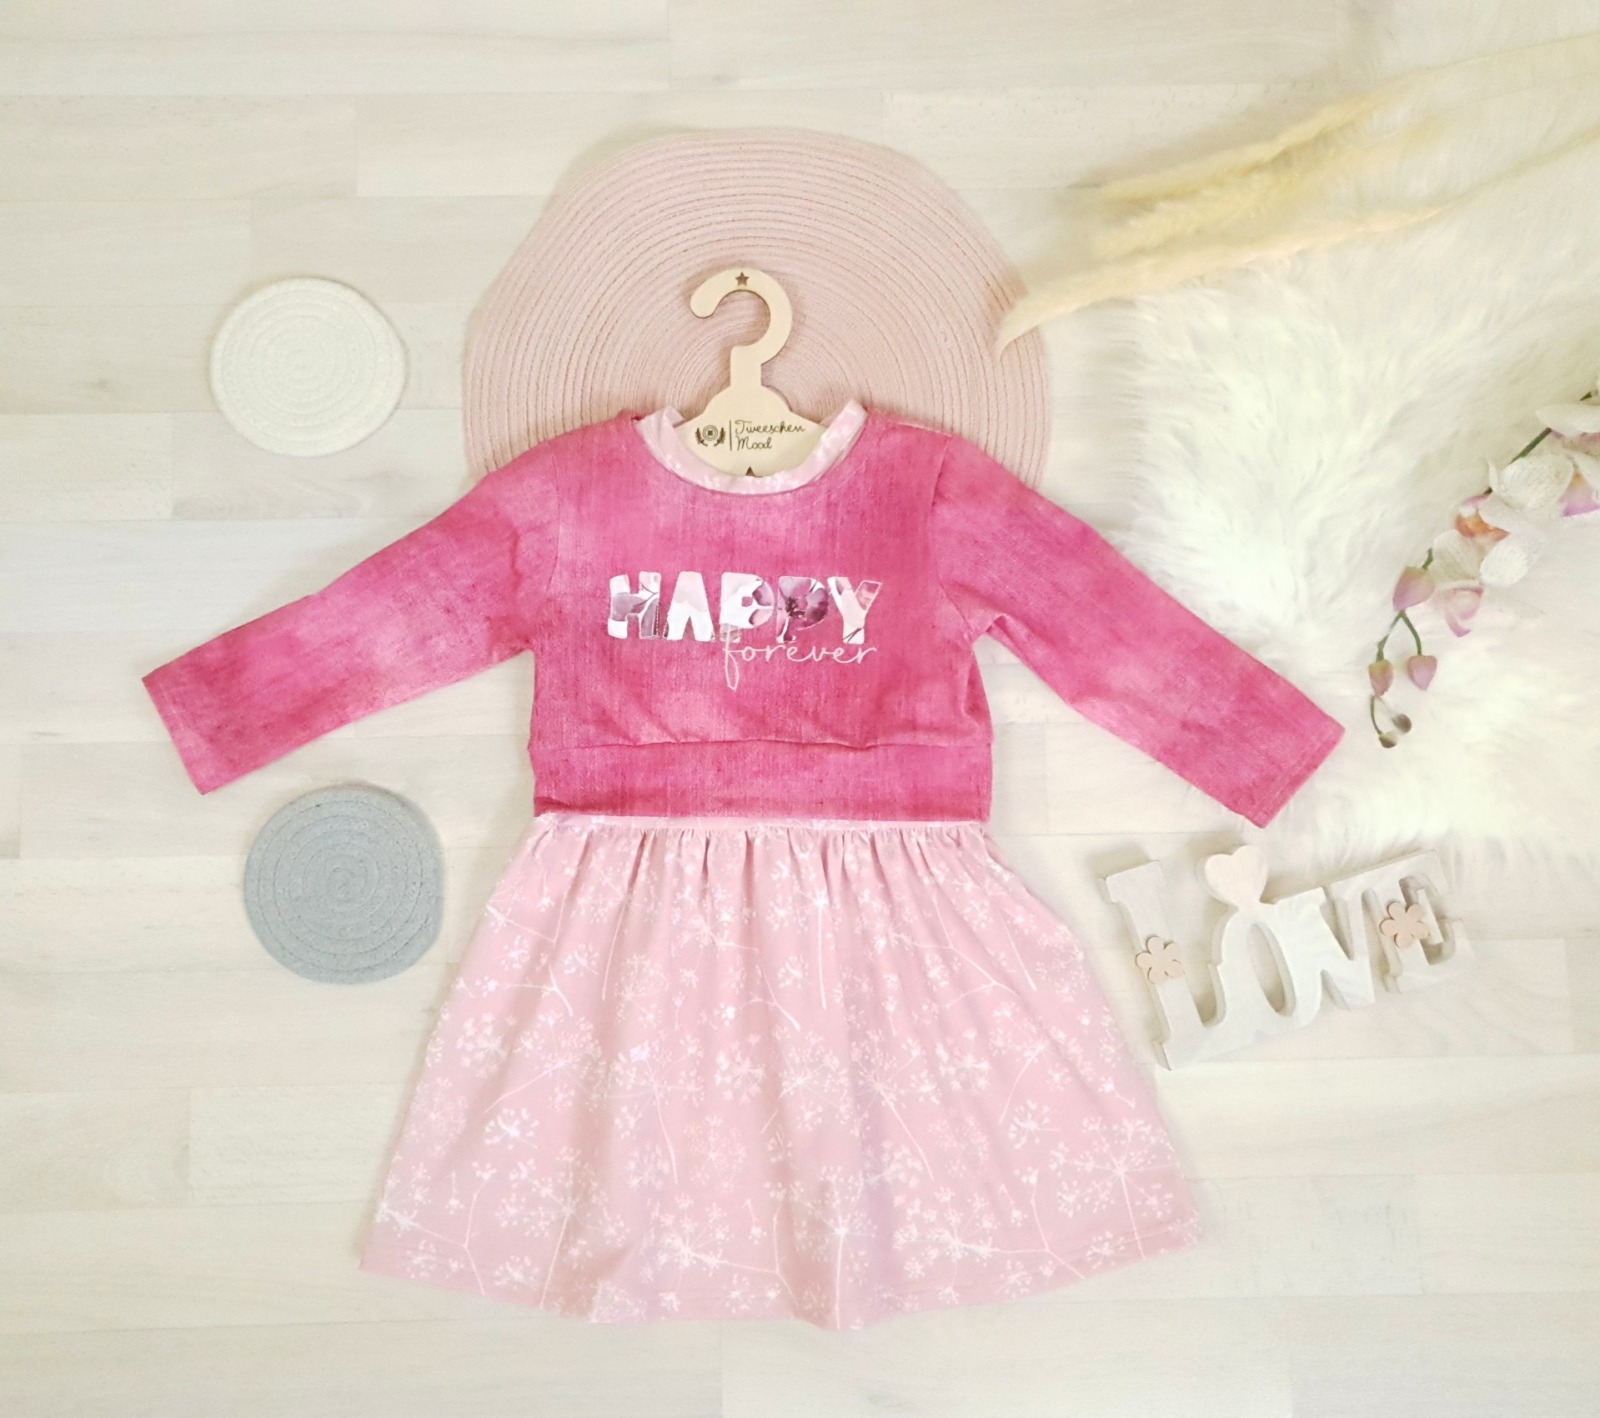 Sofortkauf Handmade Set Kleid und Croppulli Happy Pink Gr 98 Tweeschen Mood